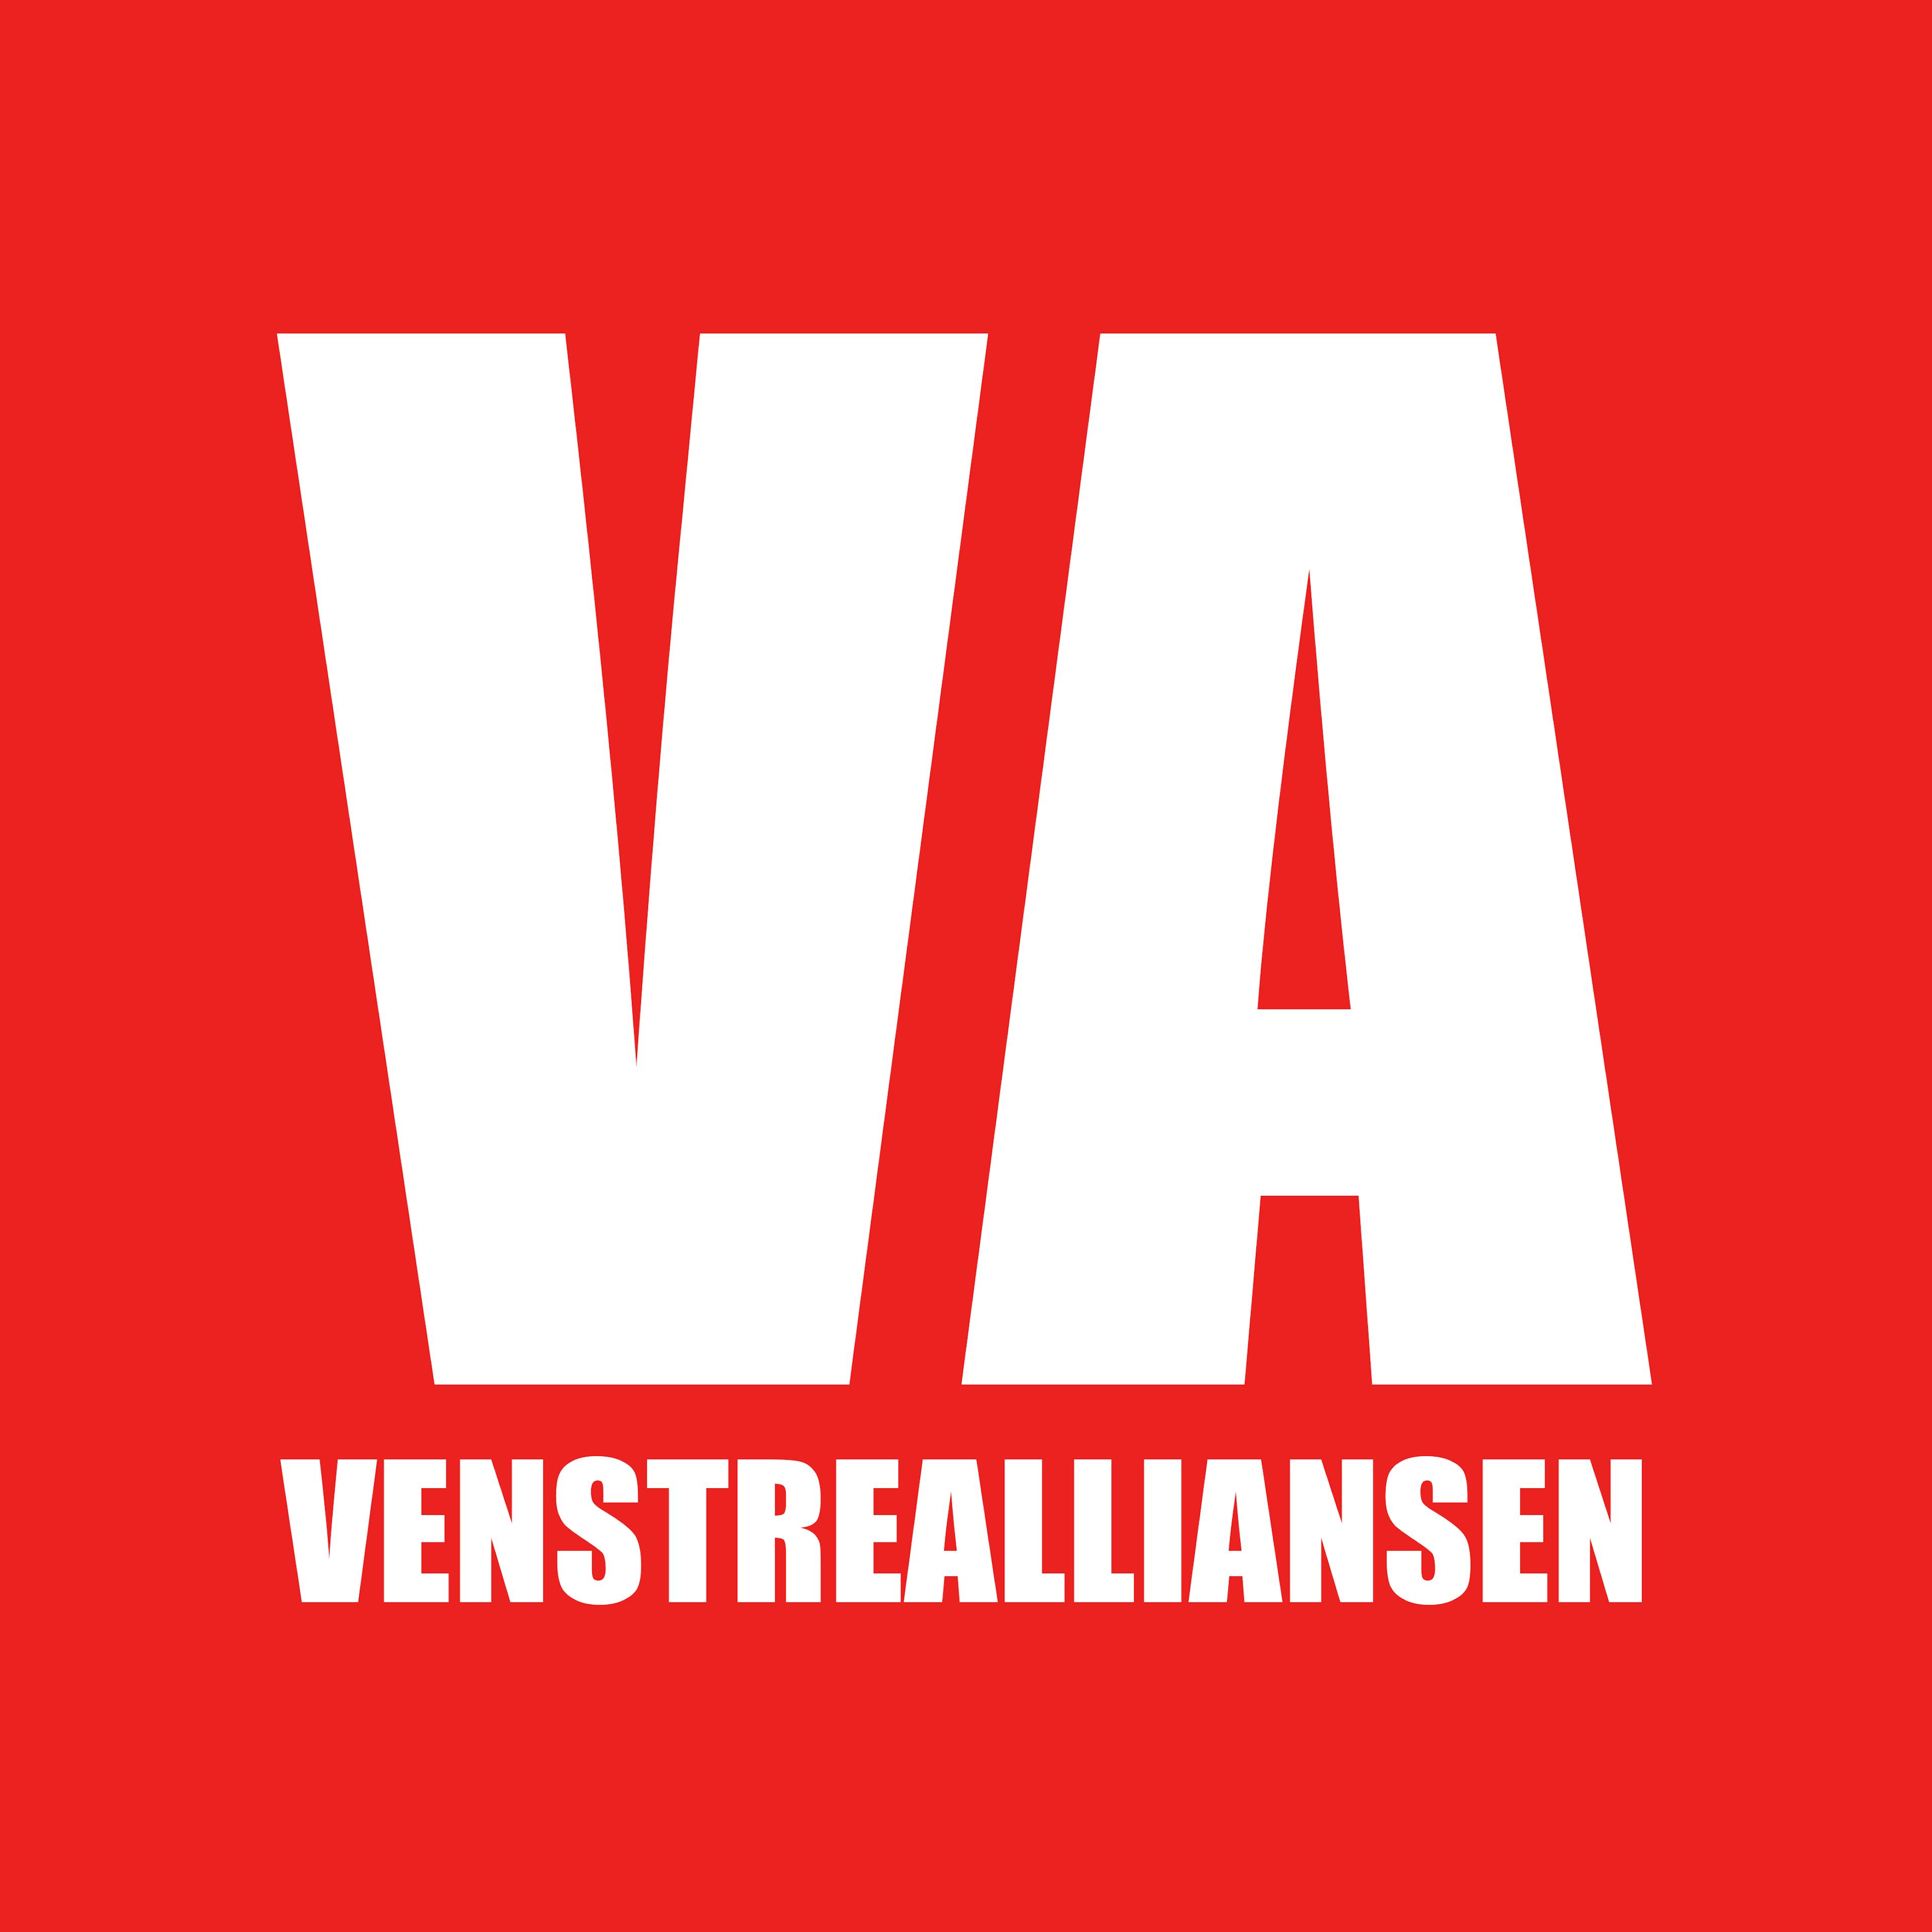 VA logo hoyopplosning